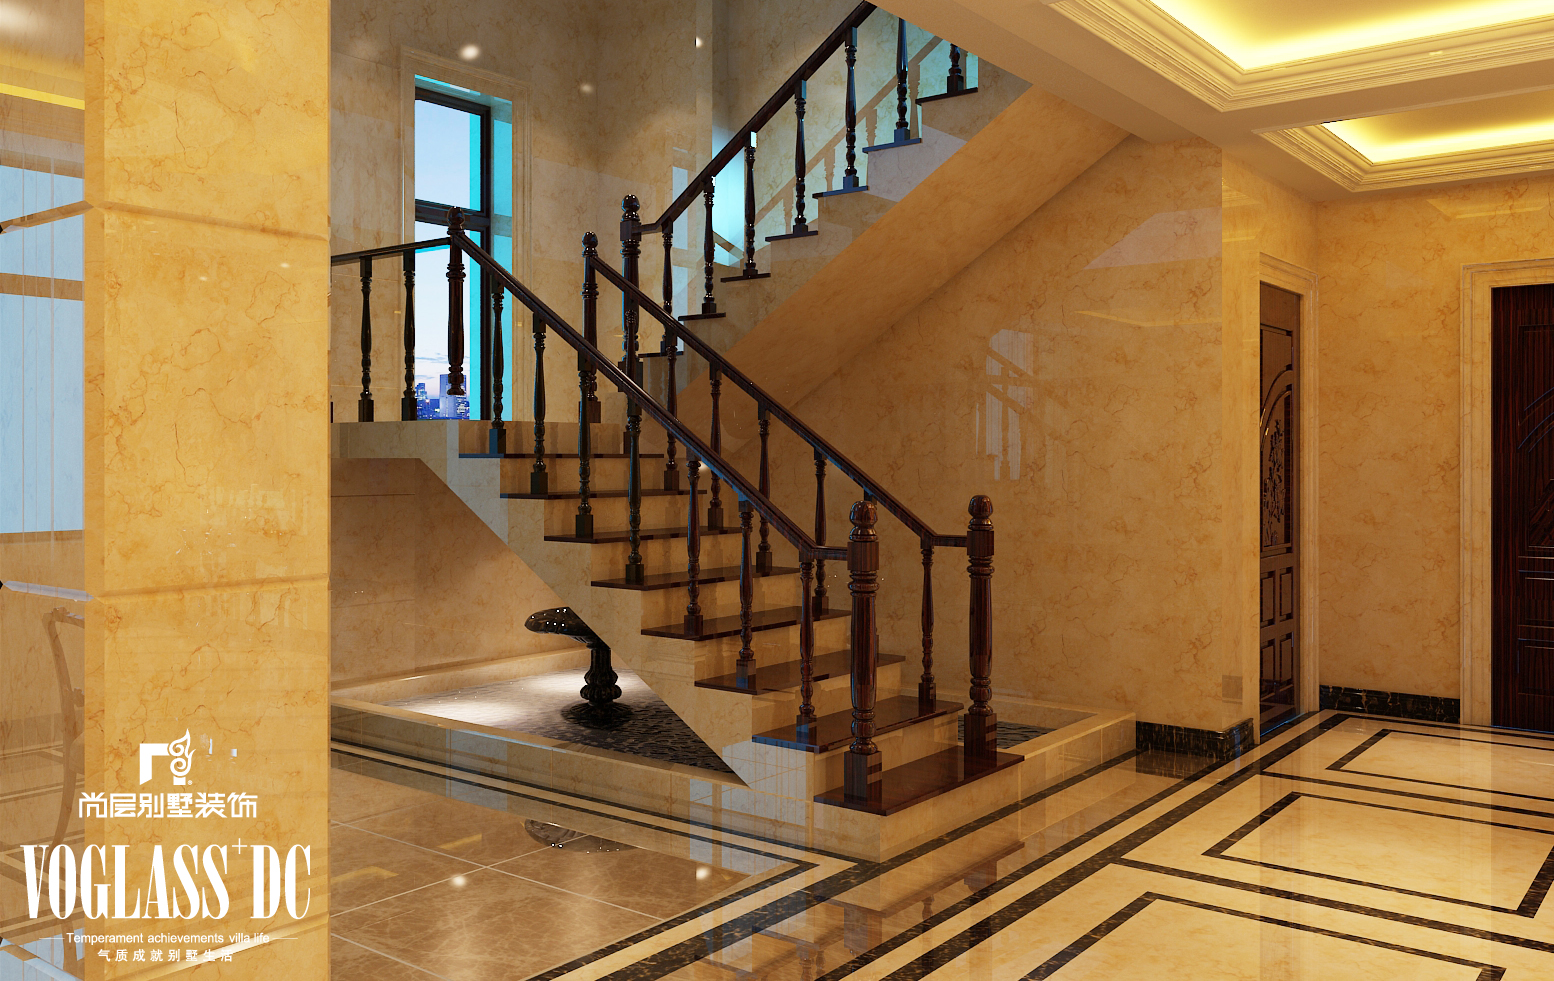 别墅 尚层装饰 新古典 楼梯图片来自Spencer丶nuzzi在团泊湖光耀城 2的分享